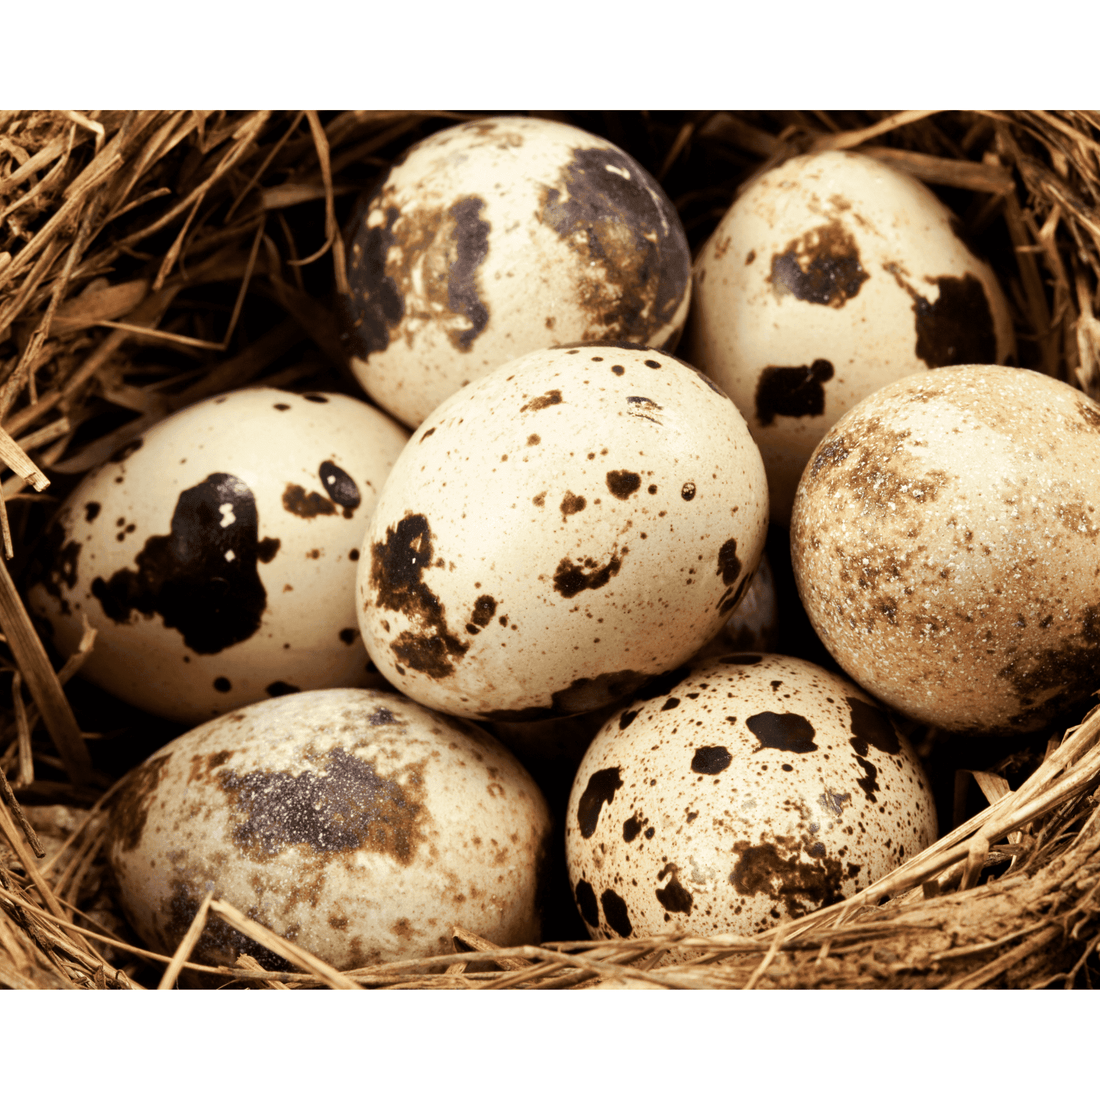 Farm Fresh Quail Eggs - 2 Dozen - White's Family Farmhouse 